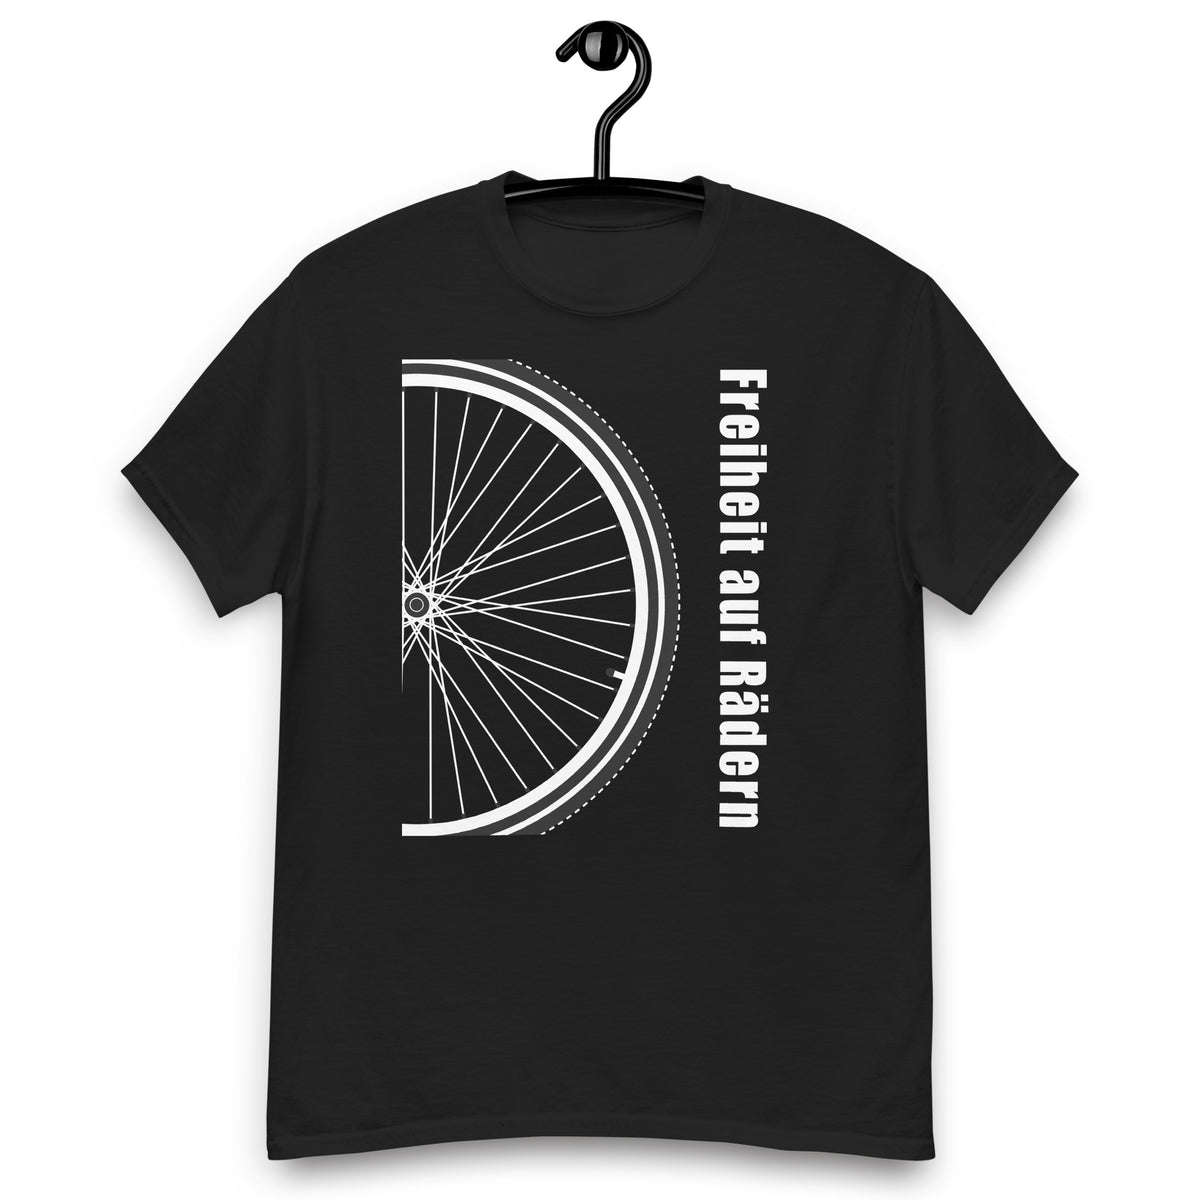 Fahrrad Shirts " Freiheit auf Rädern" Variante 1